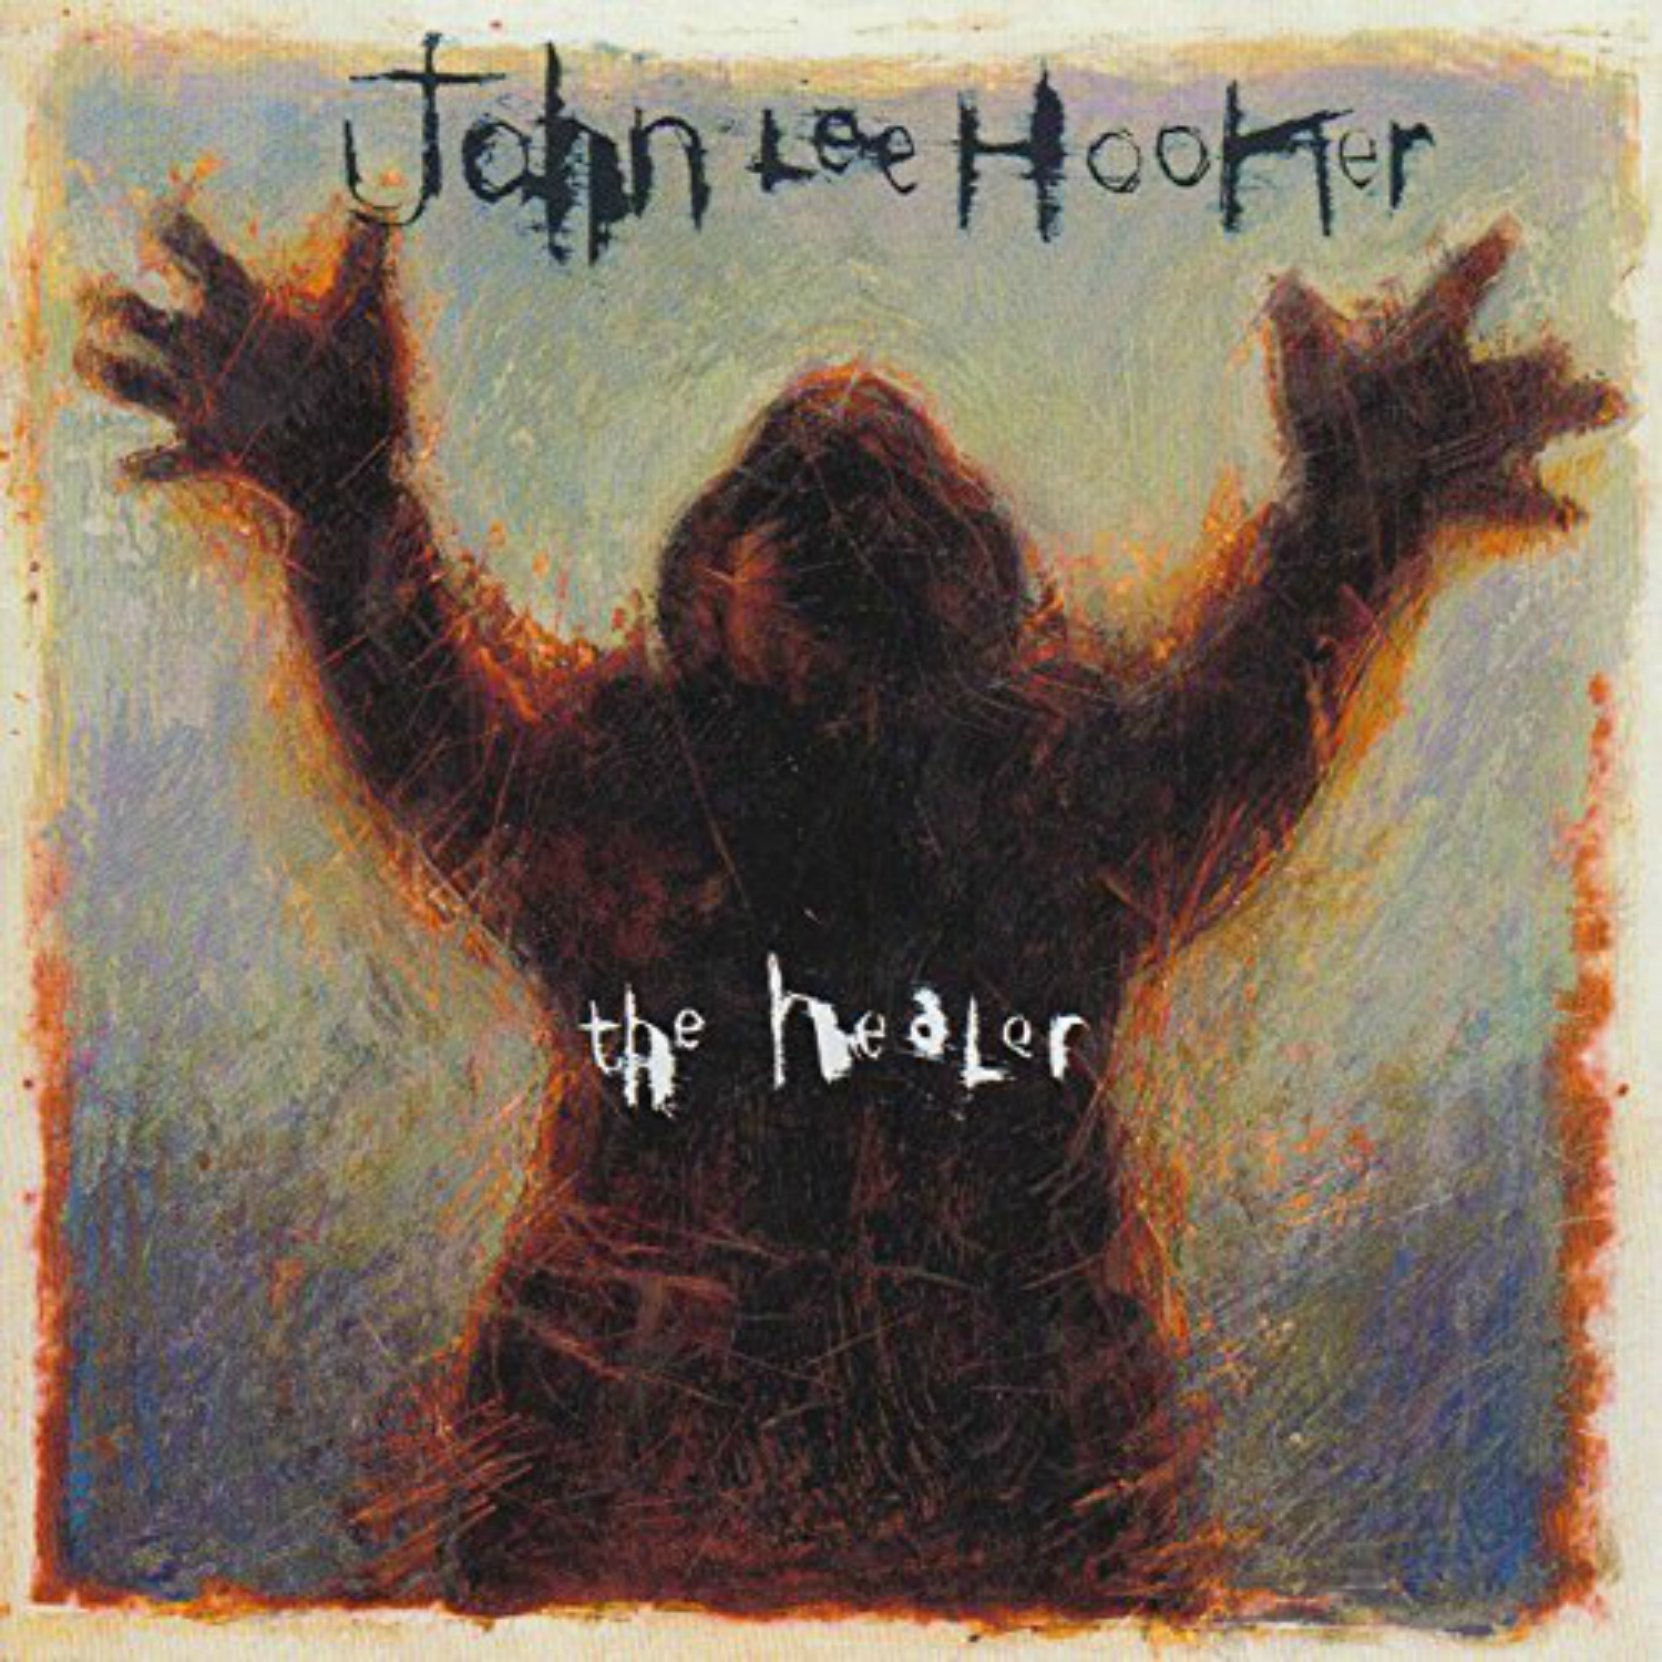 CD cover, John Lee Hooker, The Healer, released in 1989